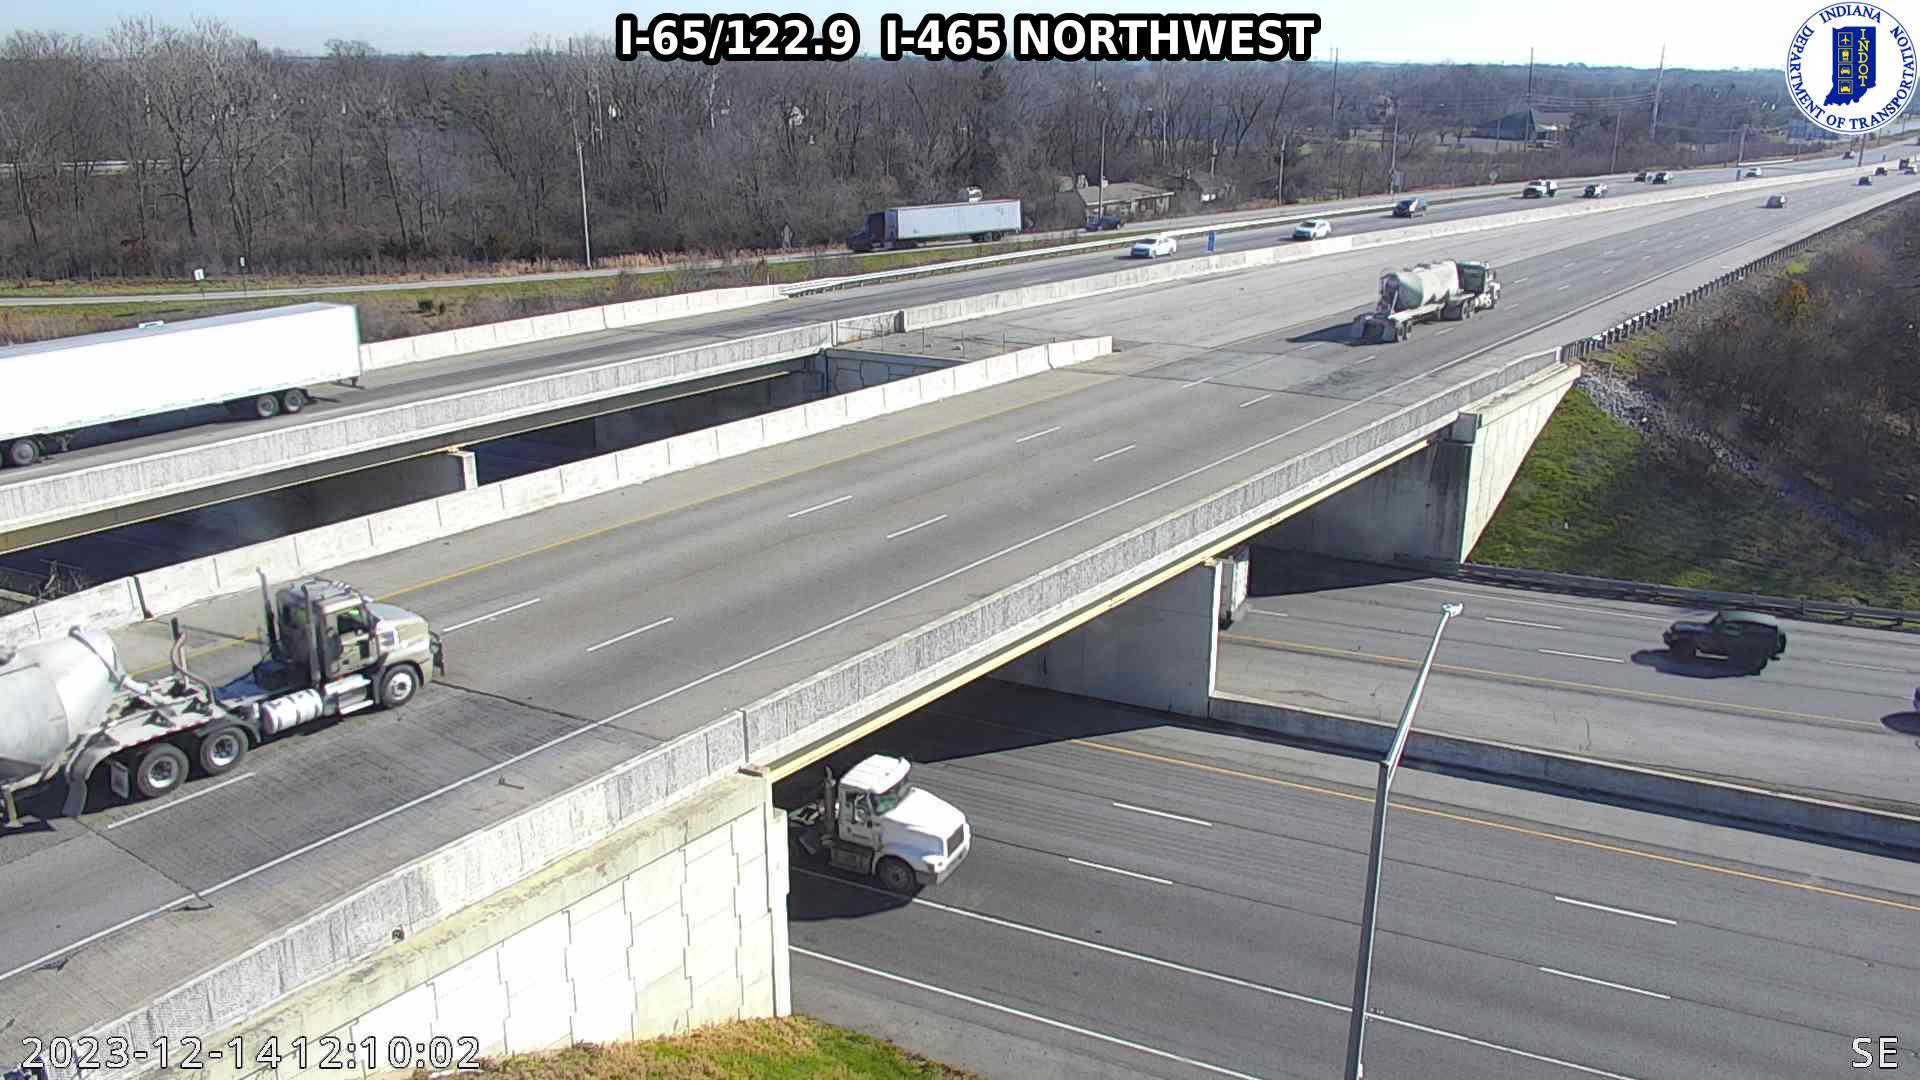 Traffic Cam Indianapolis: I-65: I-65/122.9 I-465 NORTHWEST: I-65/122.9 I-465 NORTHWEST Player